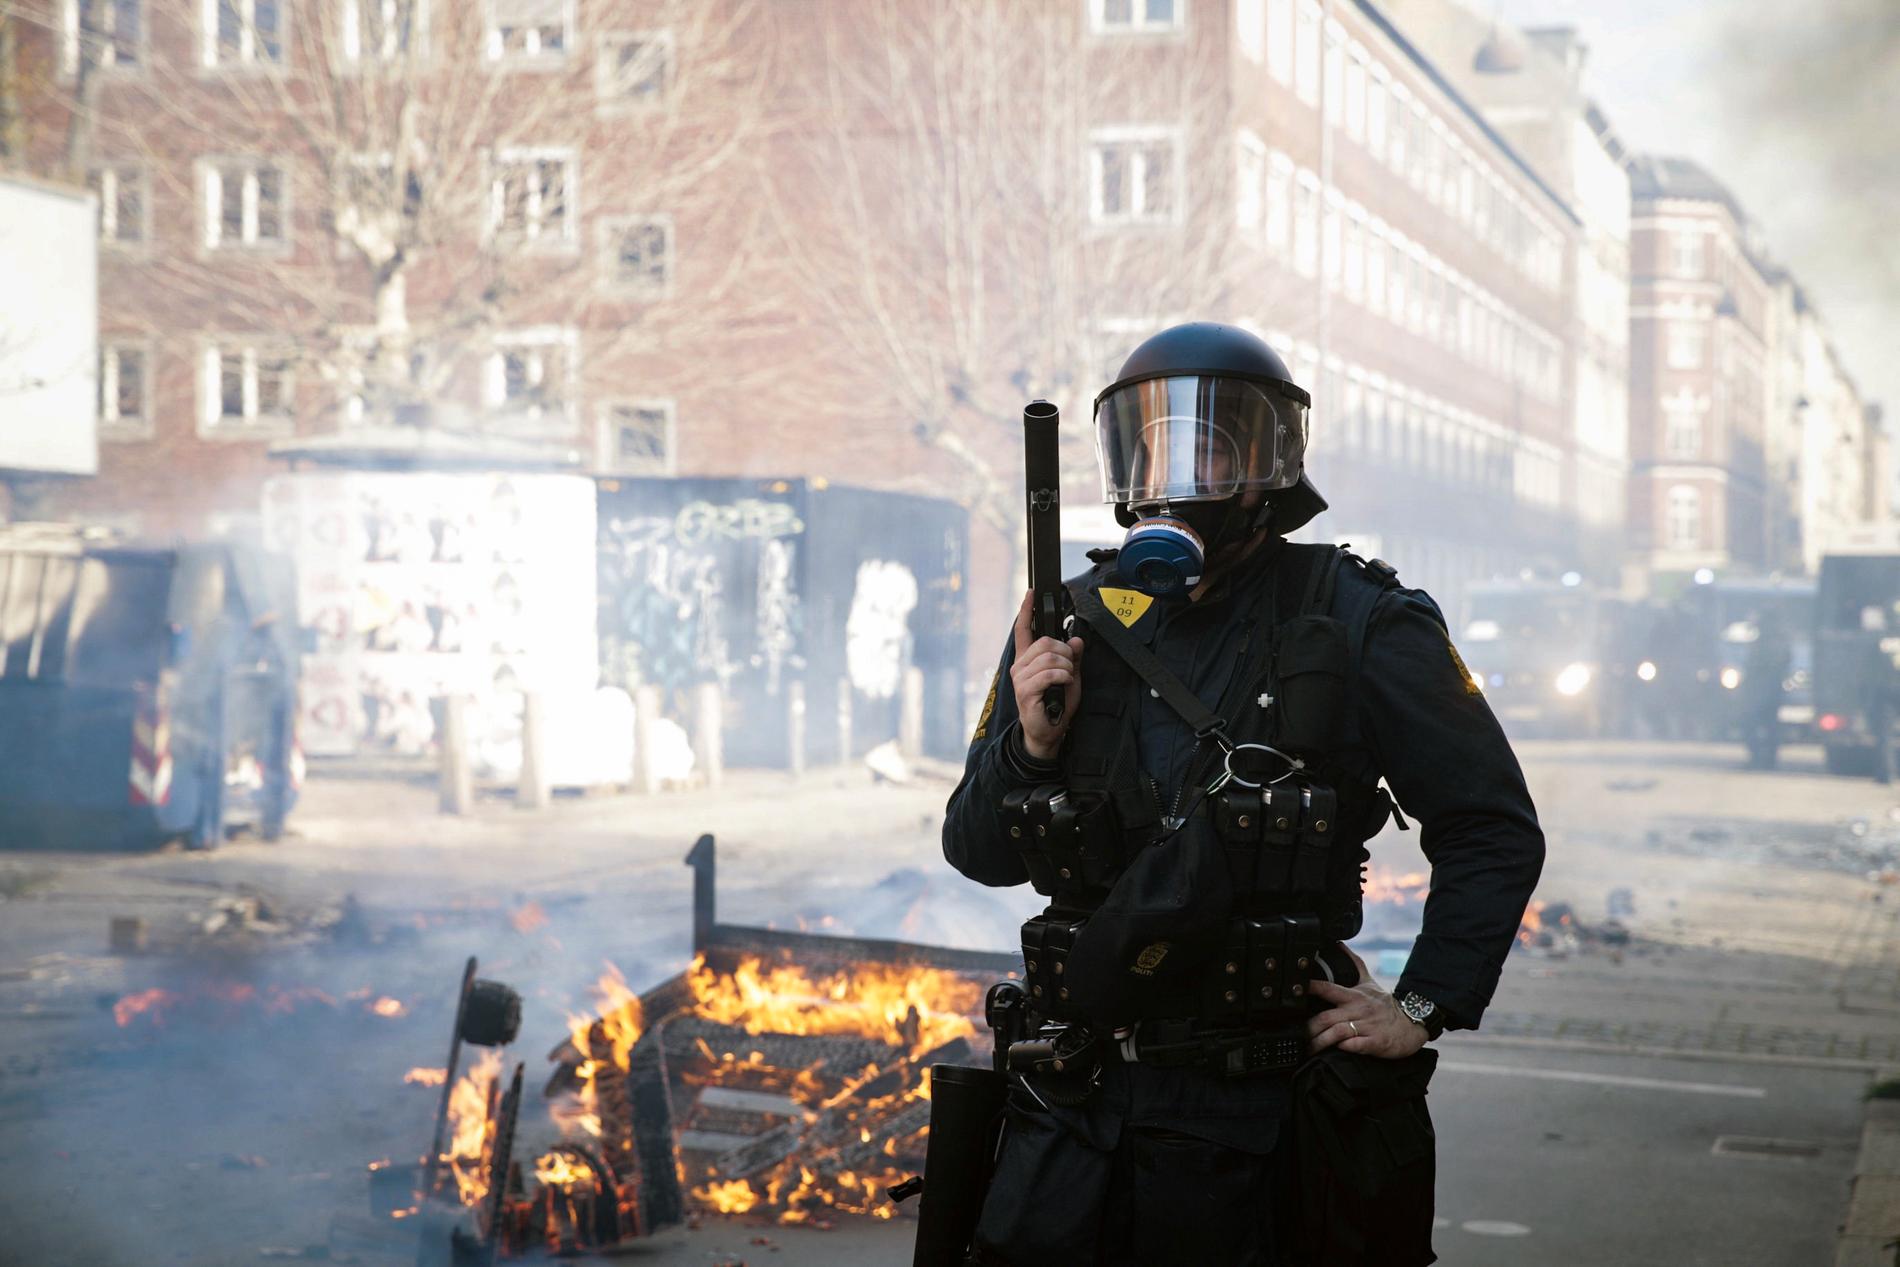 Dansk polis vid Norrebro i Köpenhamn, som det senaste dygnet skakats av oroligheter.